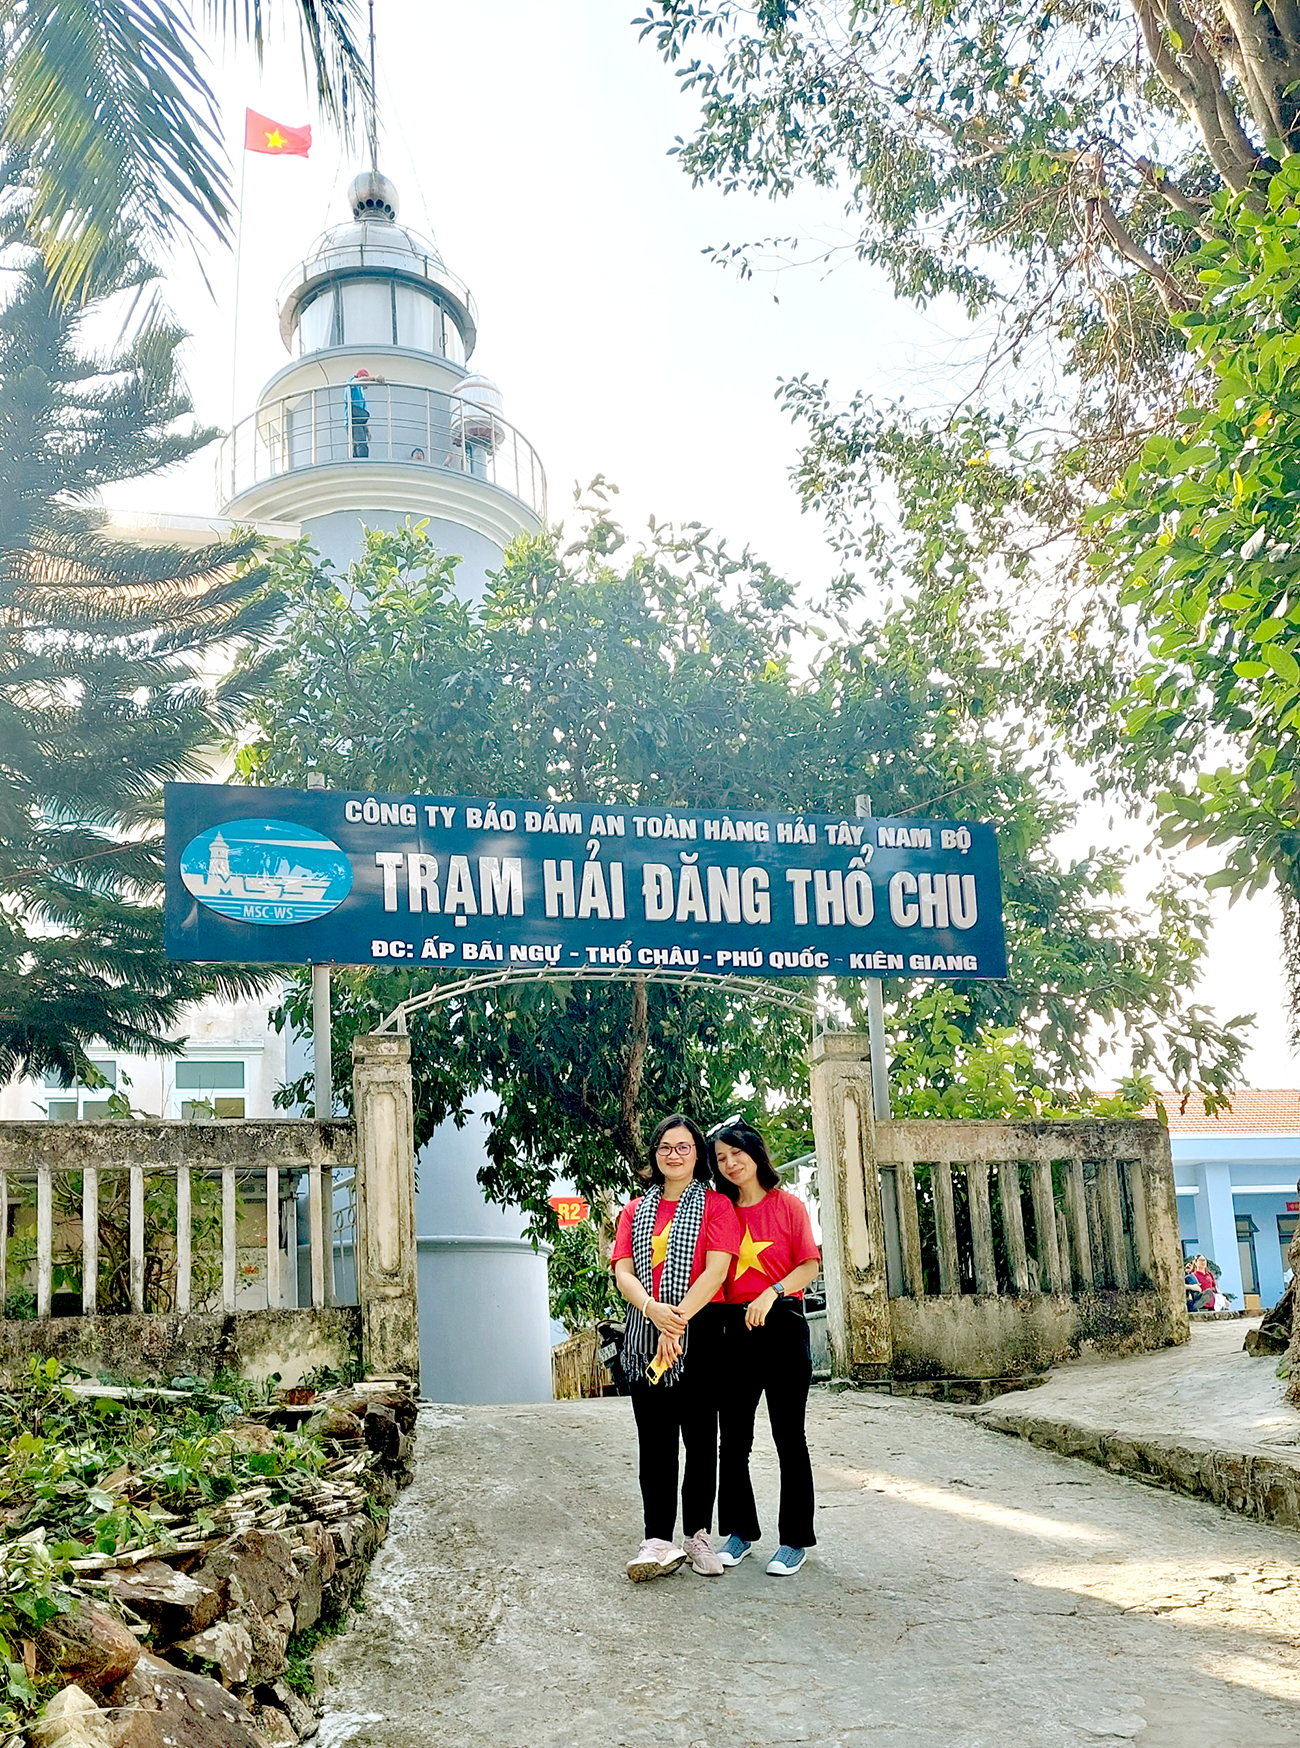 Trạm hải đăng Thổ Chu.